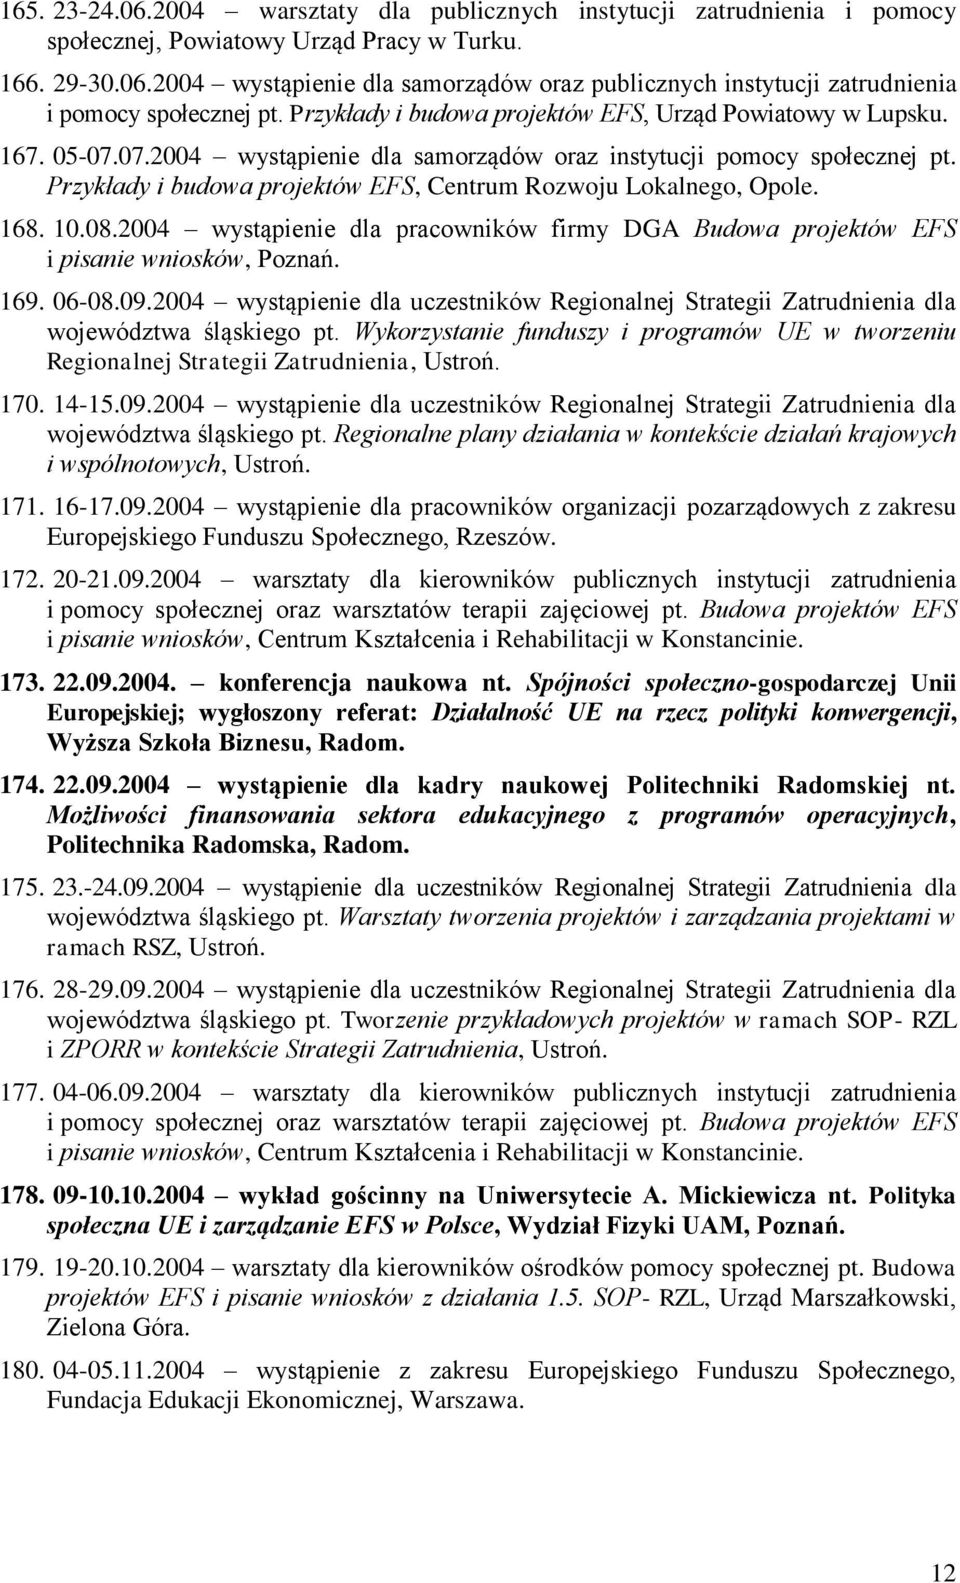 Przykłady i budowa projektów EFS, Centrum Rozwoju Lokalnego, Opole. 168. 10.08.2004 wystąpienie dla pracowników firmy DGA Budowa projektów EFS i pisanie wniosków, Poznań. 169. 06-08.09.